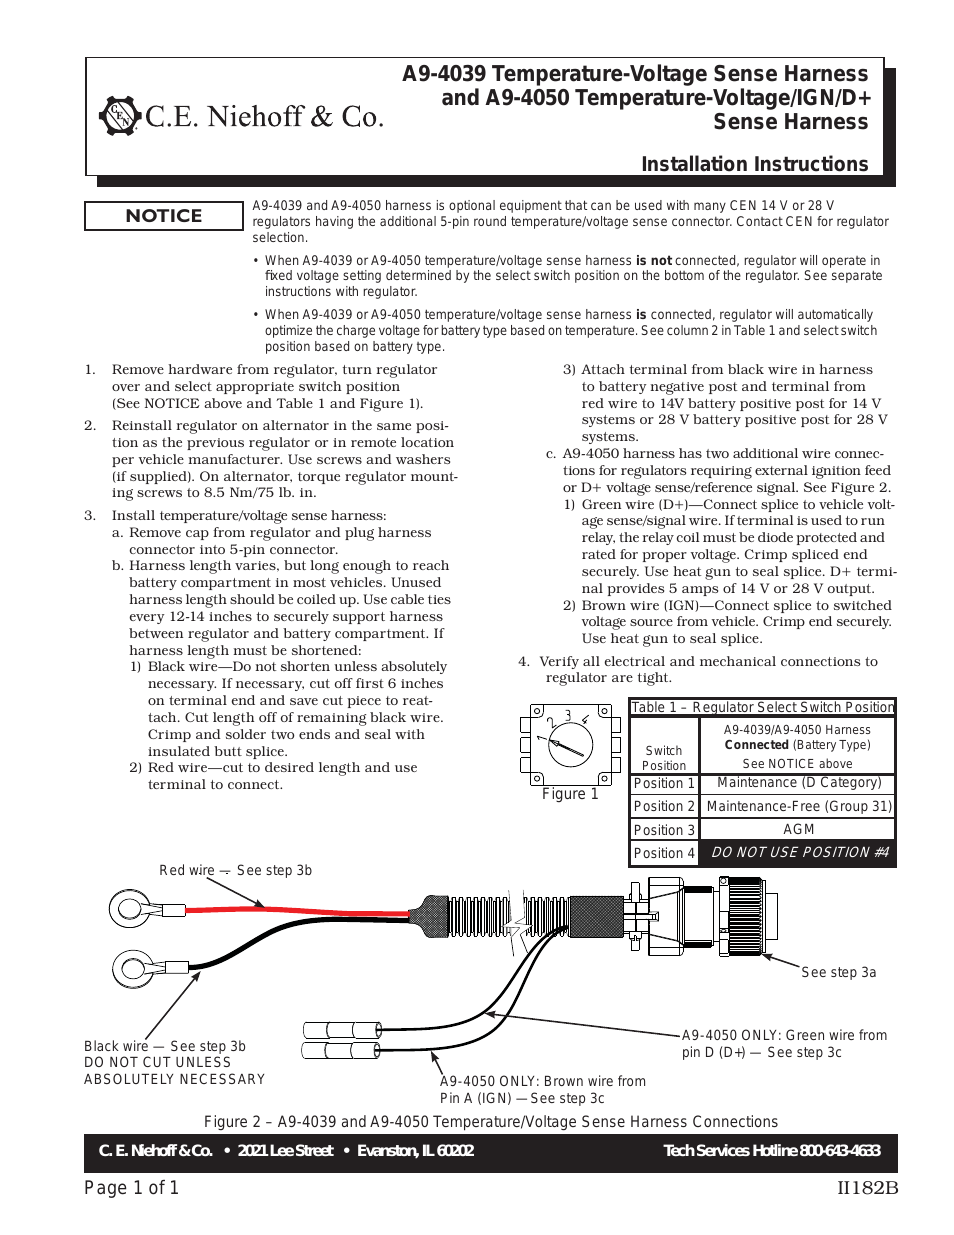 A9-4039/A9-4050 Temperature-Voltage Sense Harness Instructions